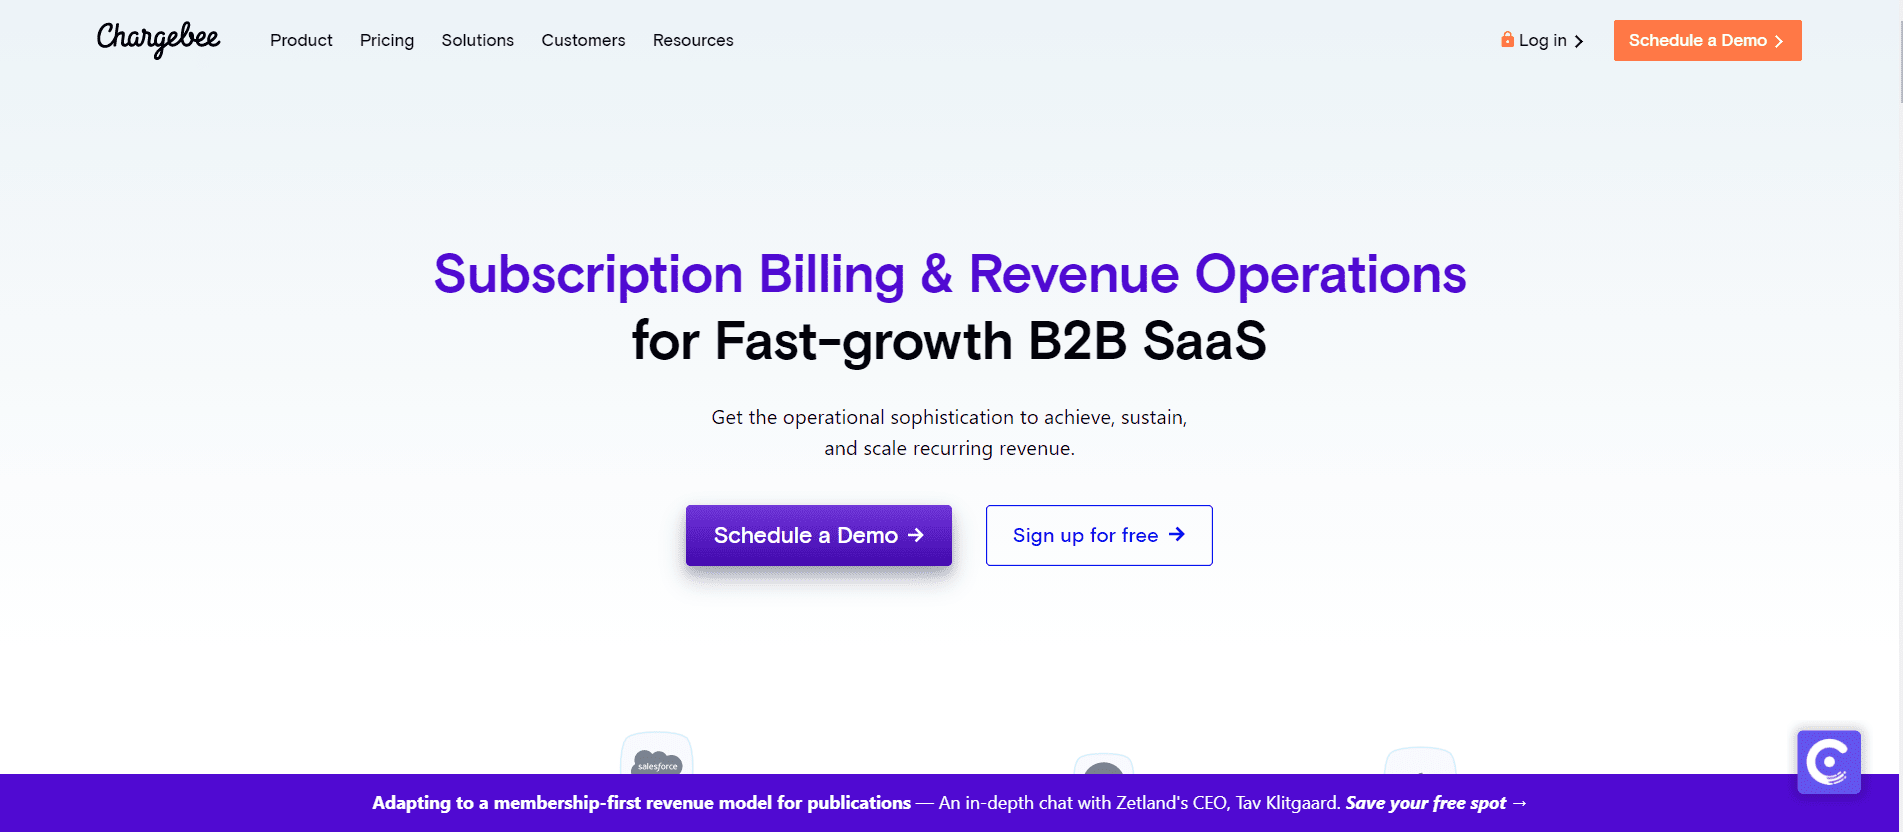 Online billing software Chargebee